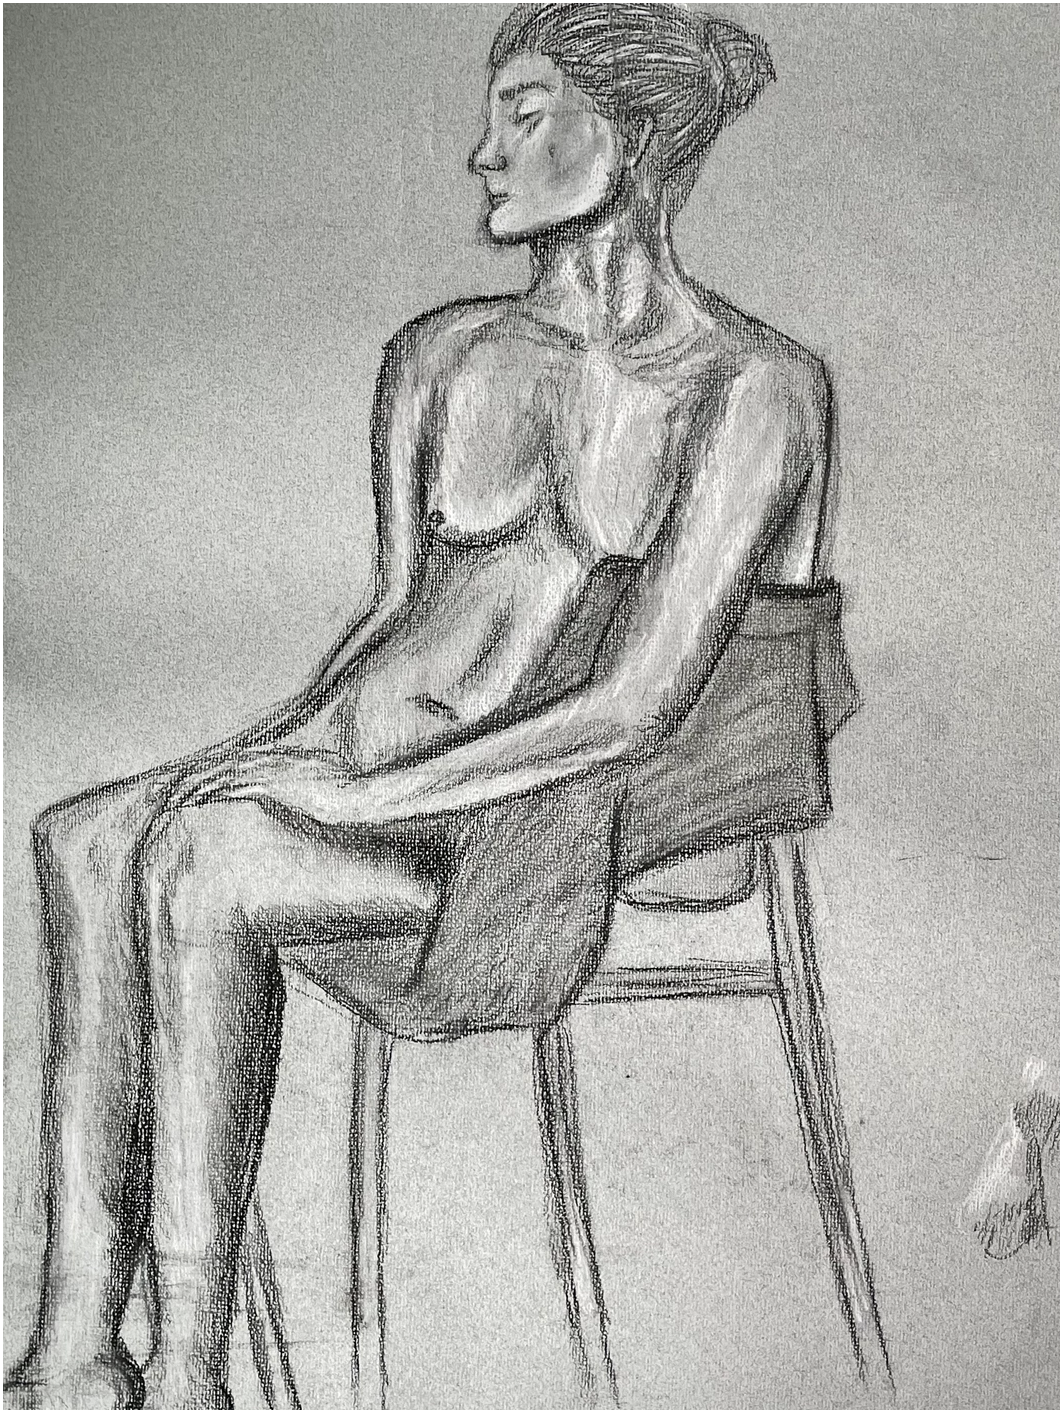 Grey Woman Sitting